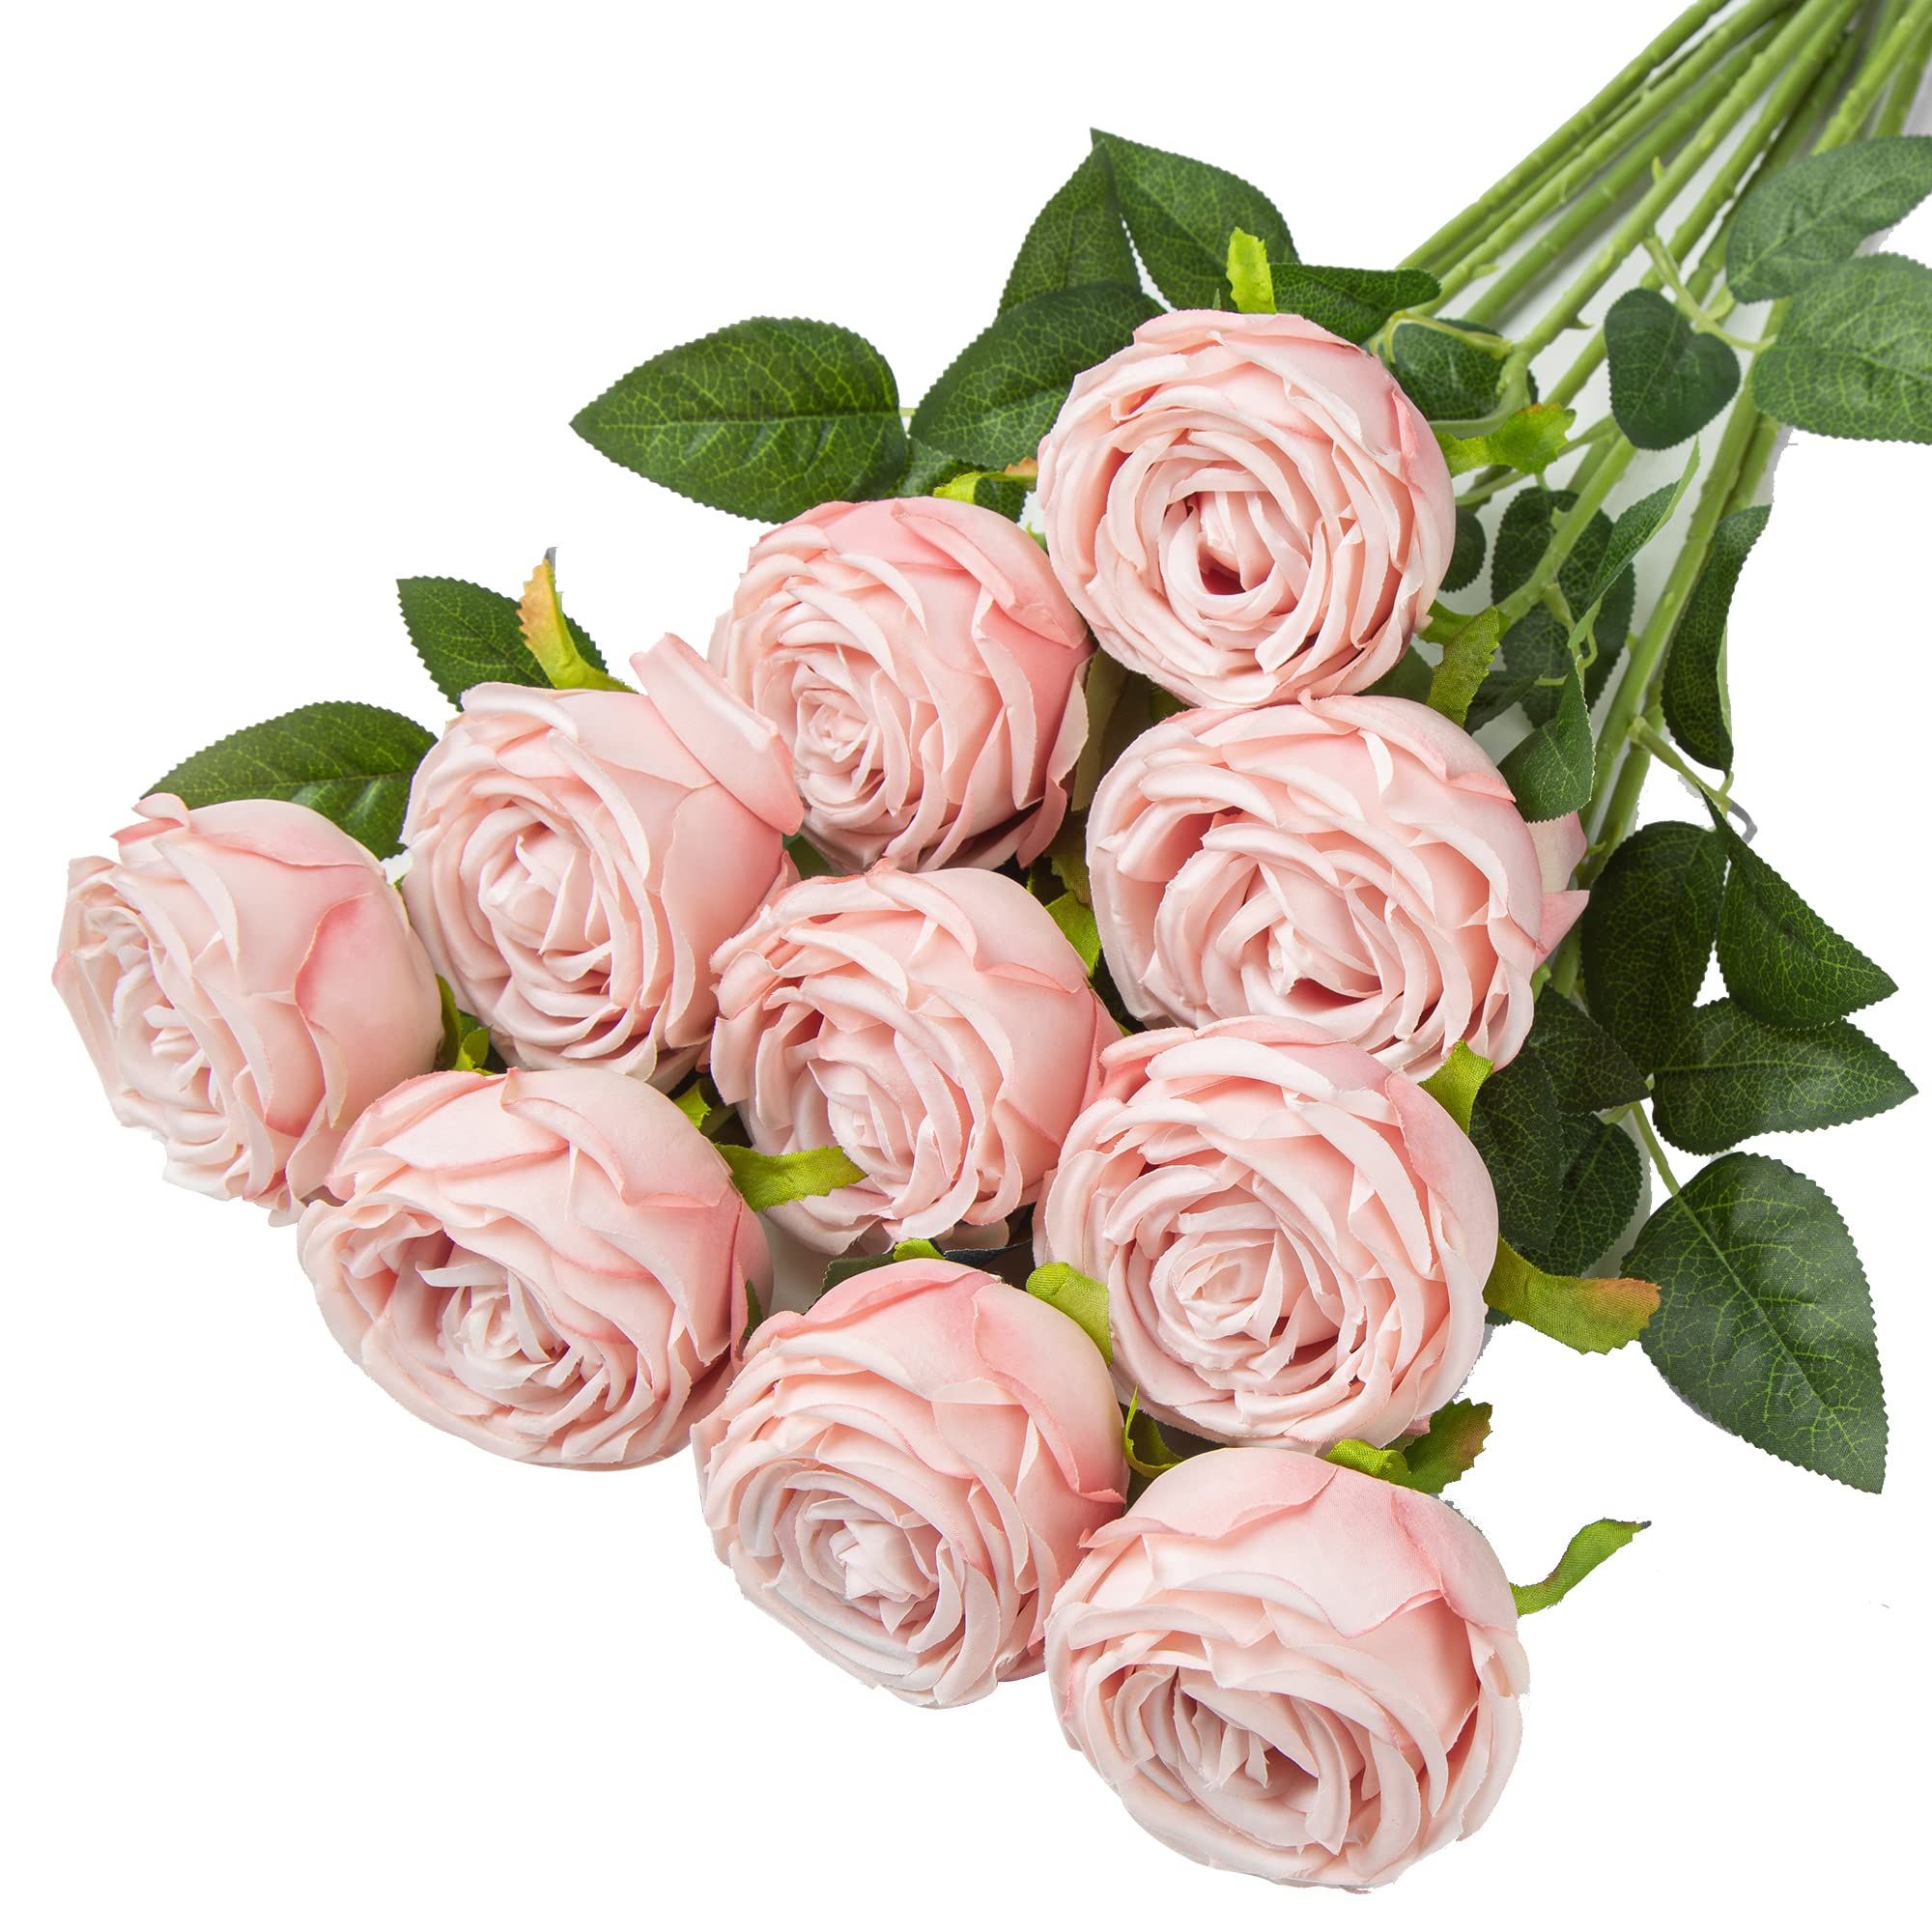 Coferset Princess Silk Rose Flowers Long Stem Artificial Melaleuca Rose Flower for Home Wedding Deco | Amazon (US)